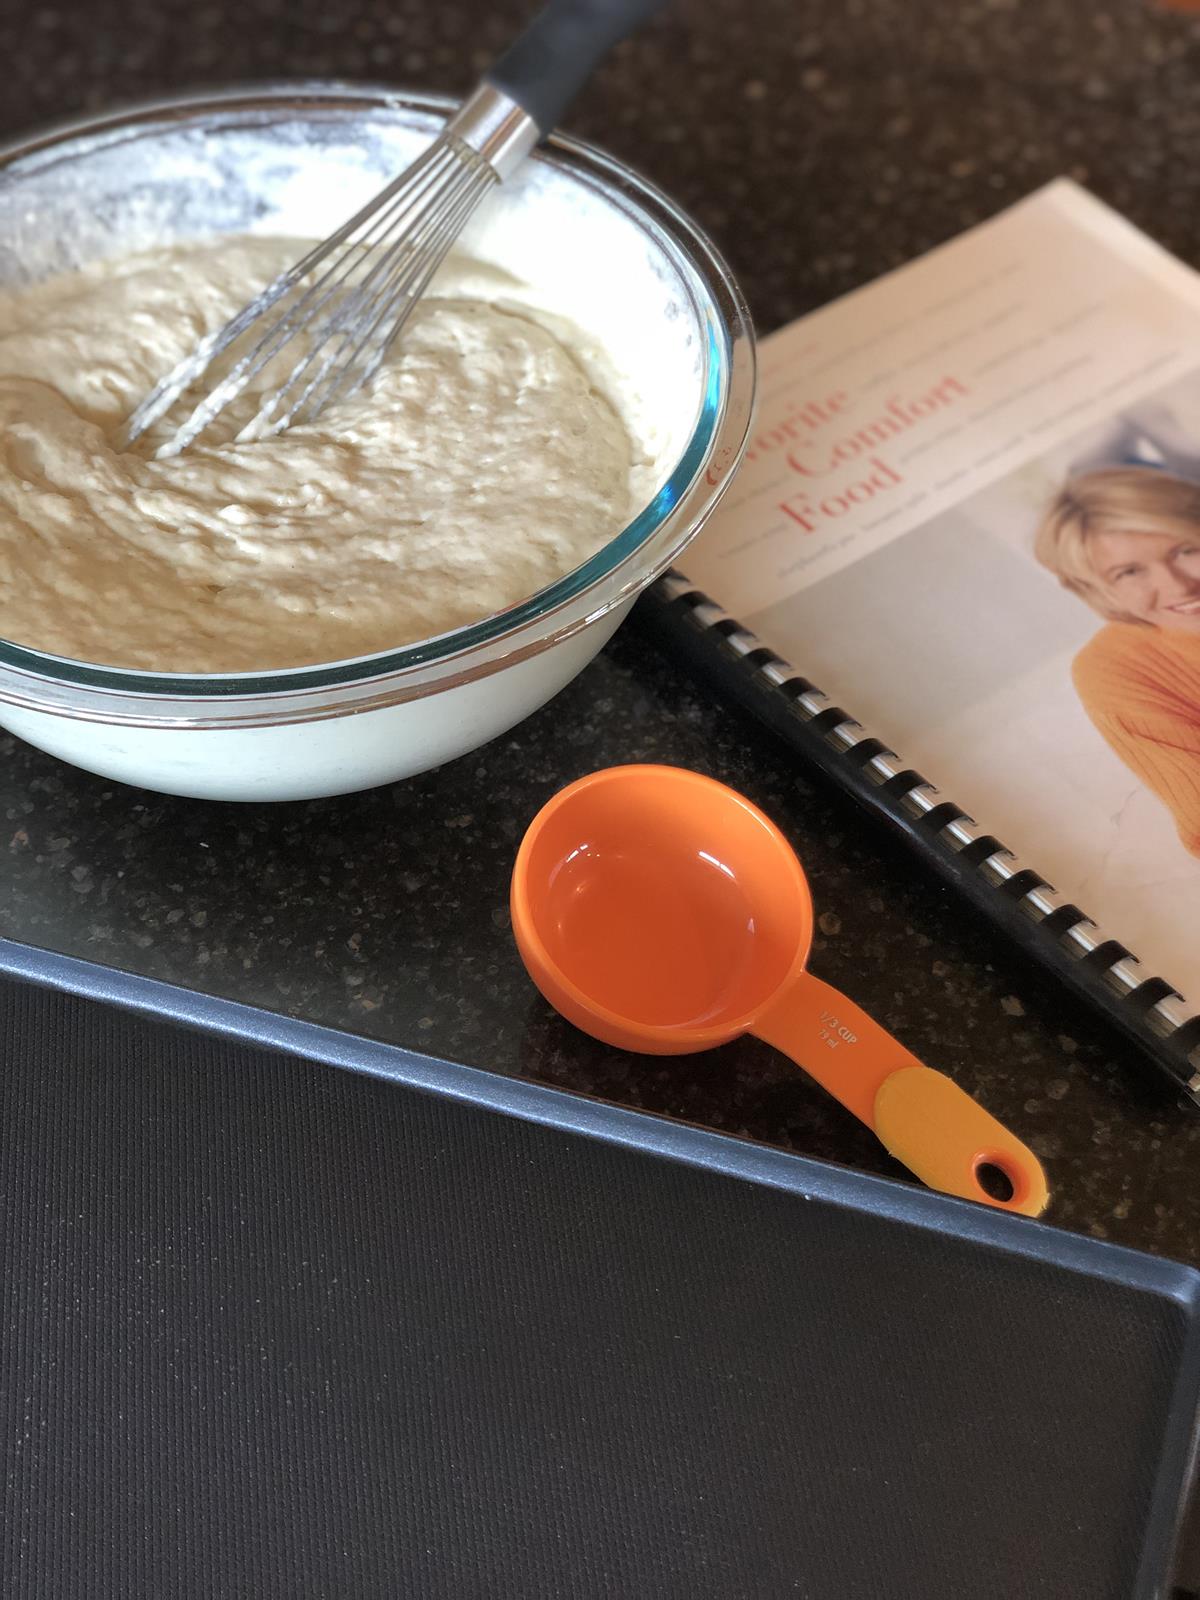 Pancake batter, griddle, and cookbook